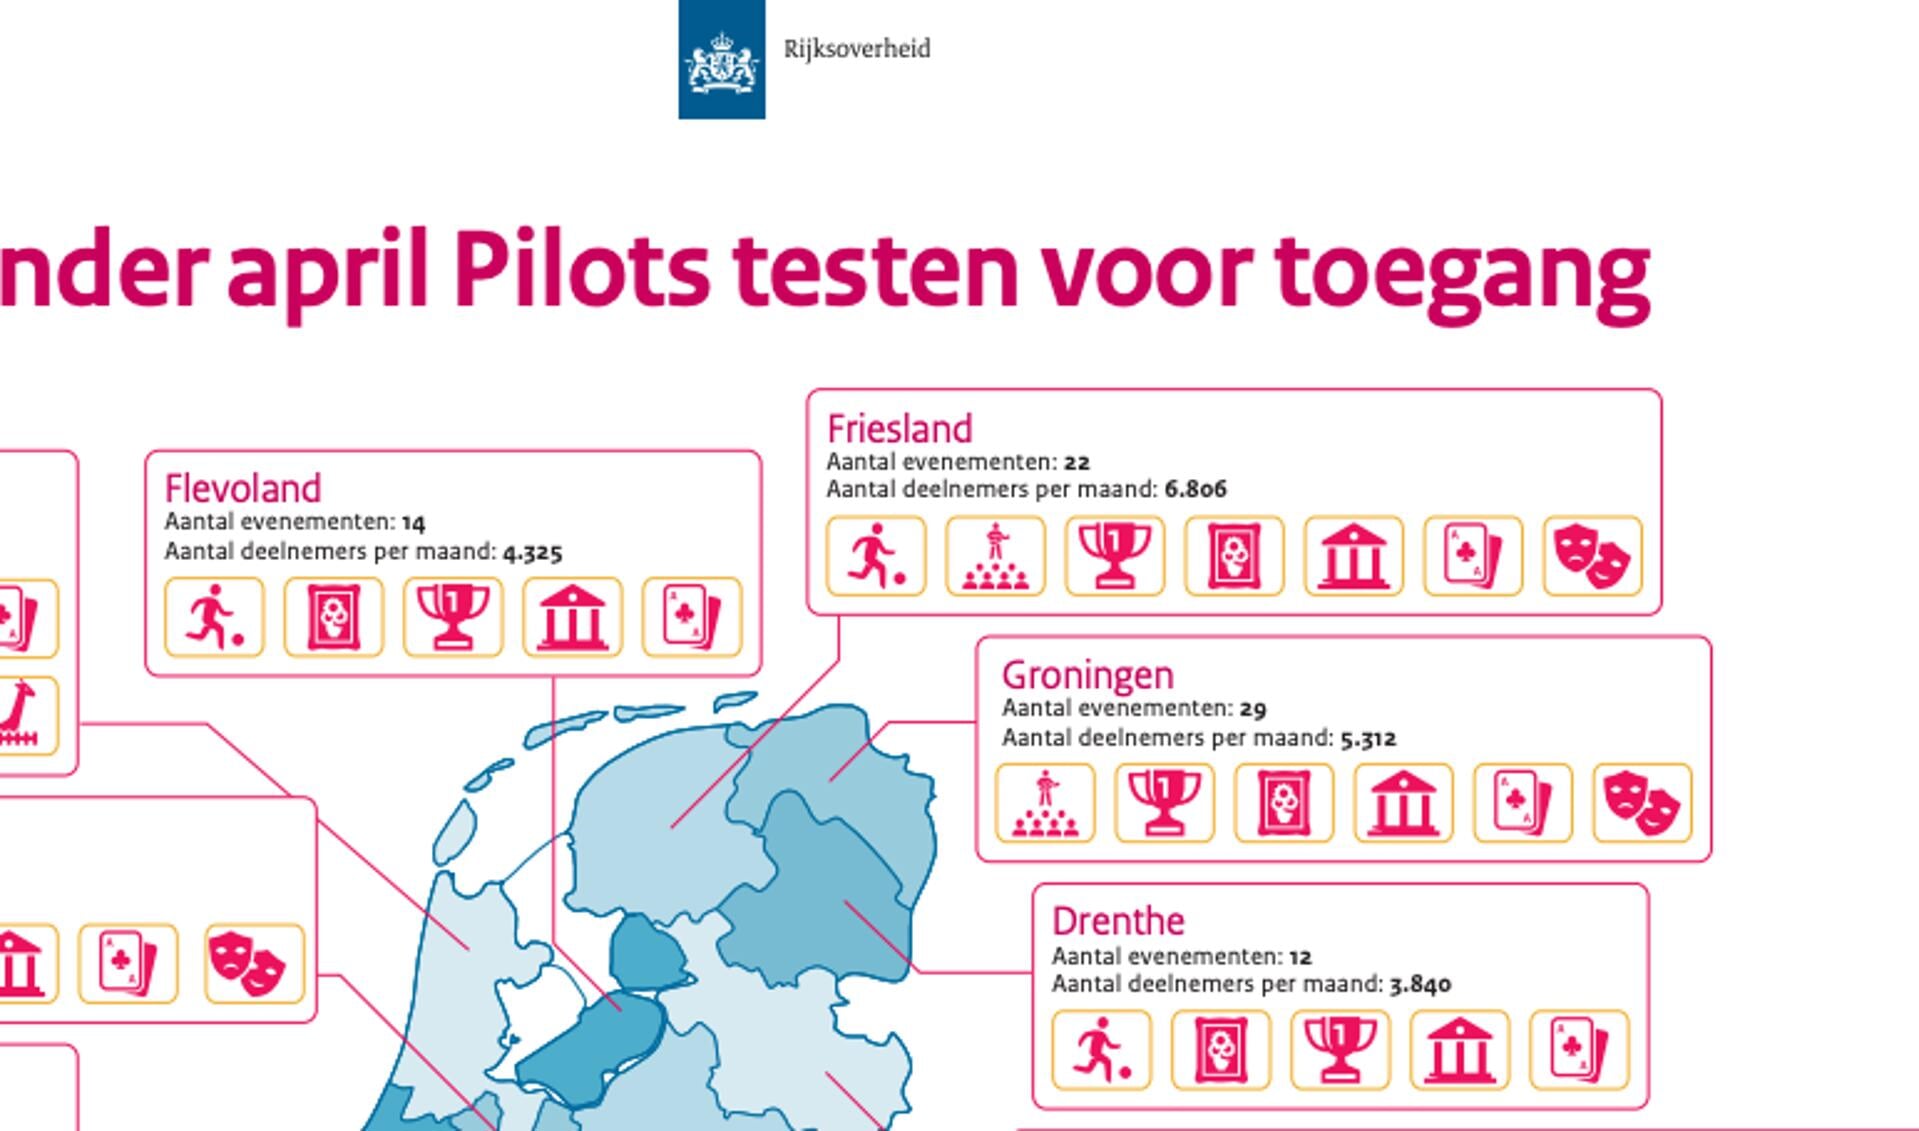 Uitsnede van de overzichtskaart van Nederland, met alle pilots per provincie gerangschikt.